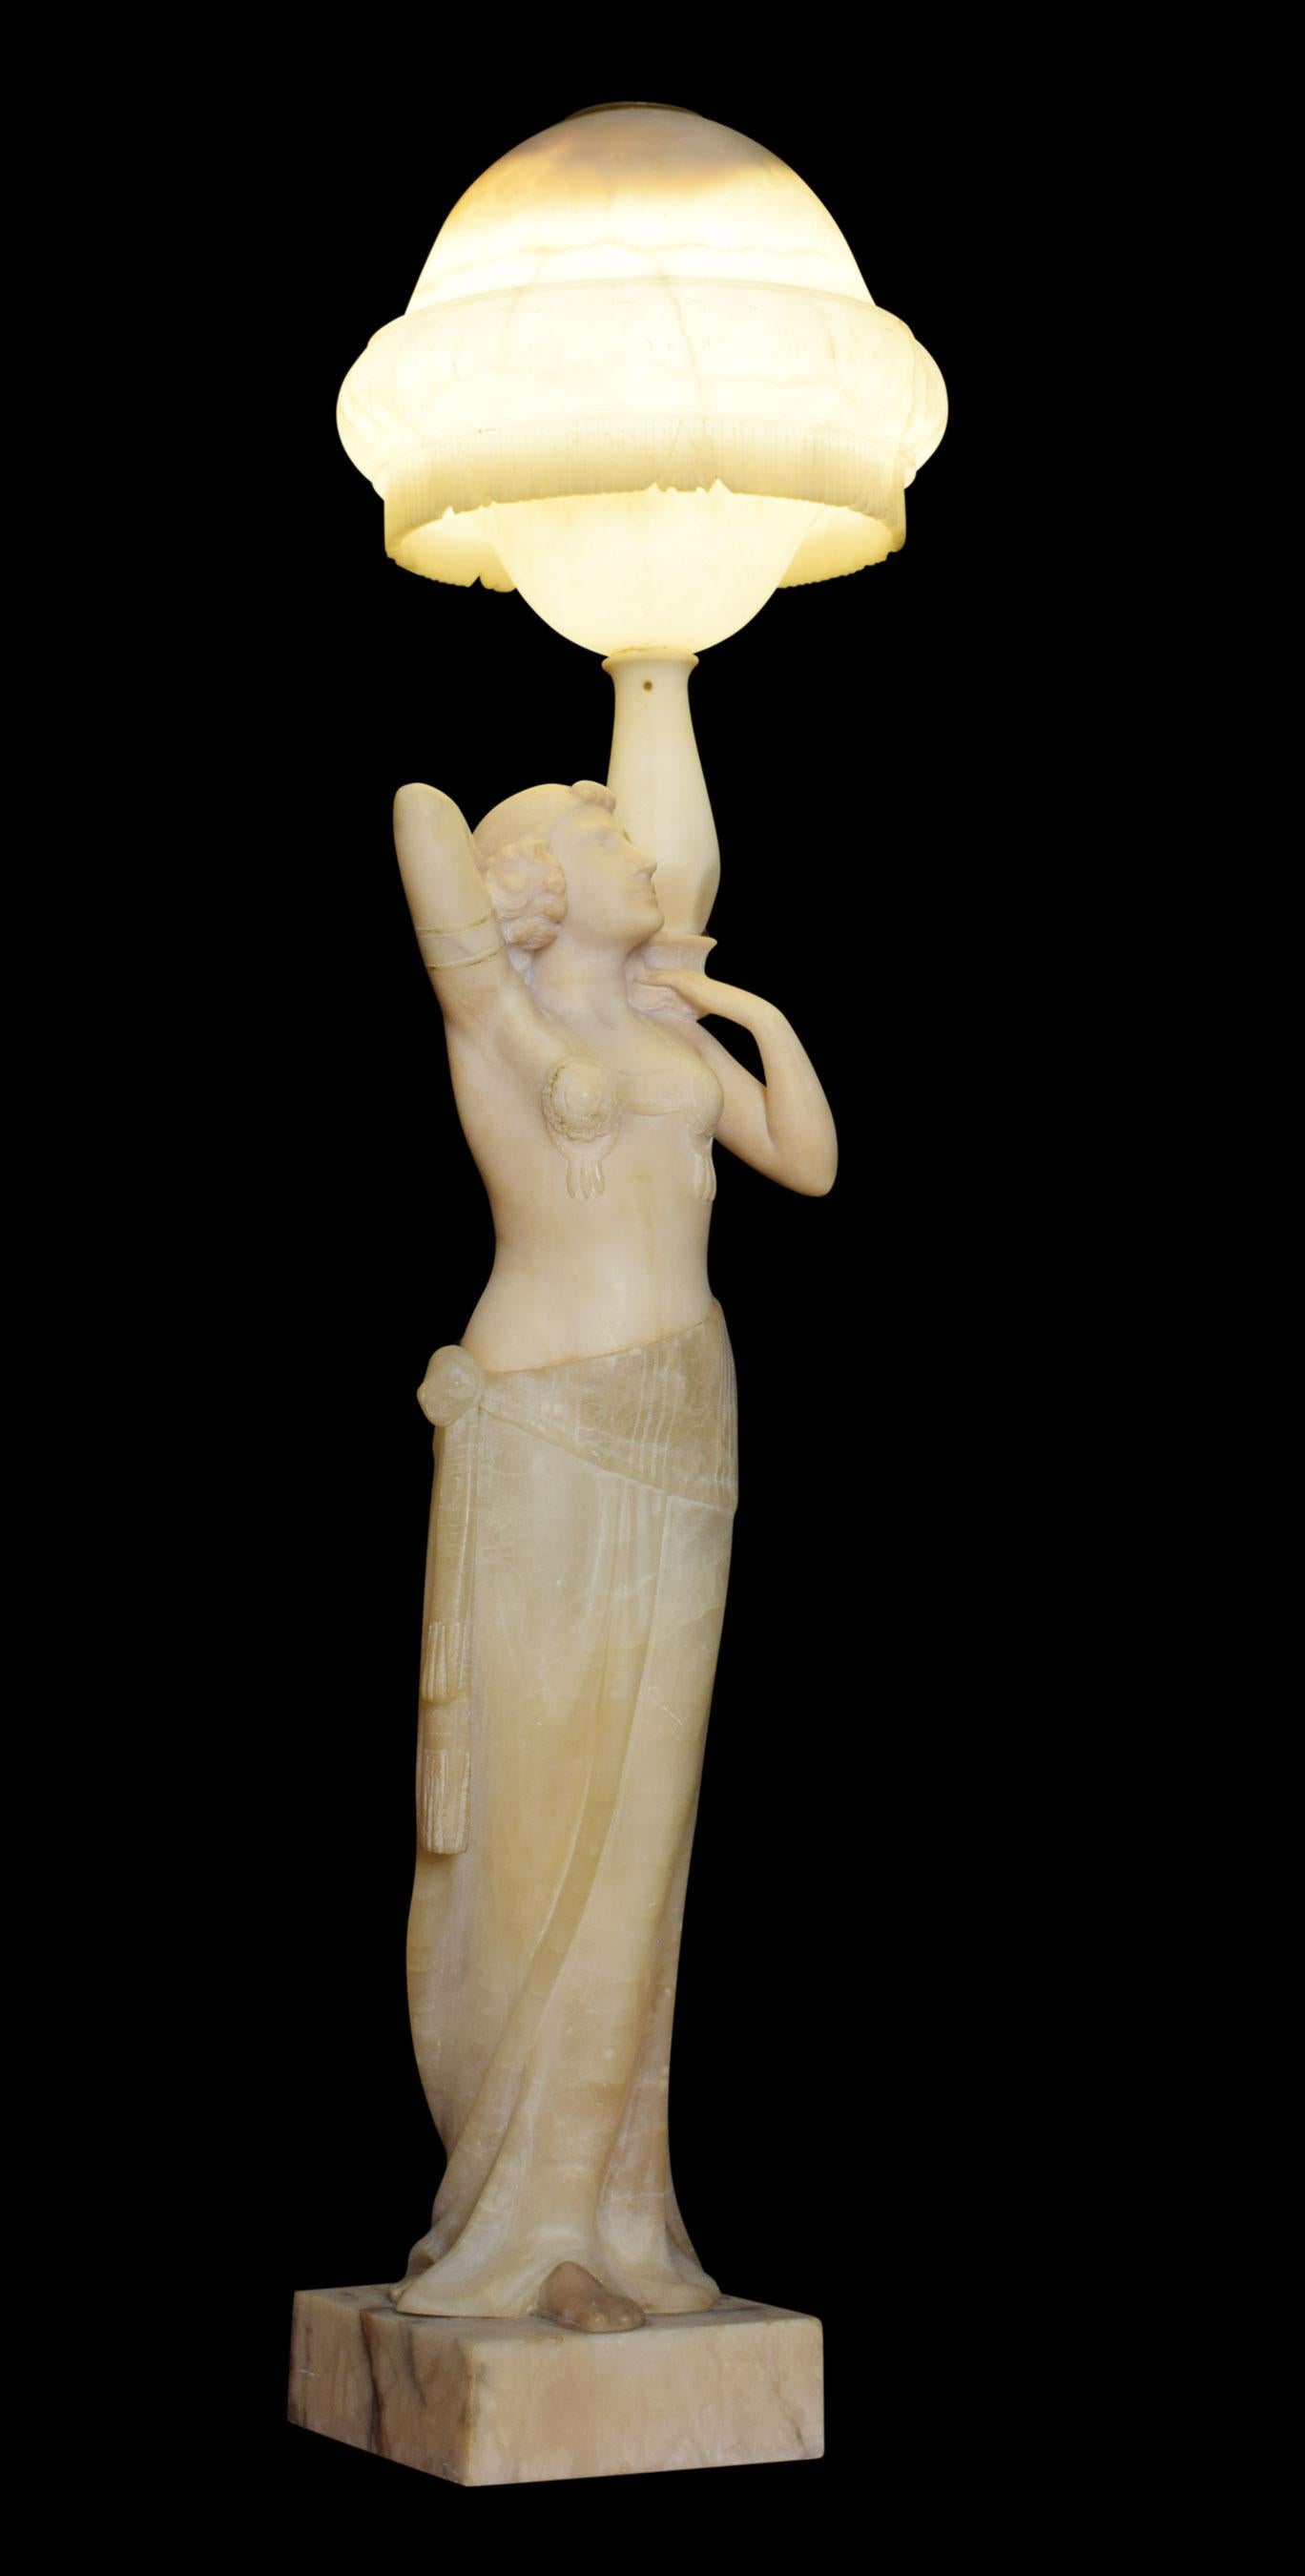 Lampe Art Déco en albâtre représentant une danseuse de style néo-égyptien, les bras levés sous l'abat-jour en forme de bol. La lampe a été recâblée.
Dimensions
Hauteur 40 pouces
Largeur 11.5 pouces
Profondeur 11.5 pouces.